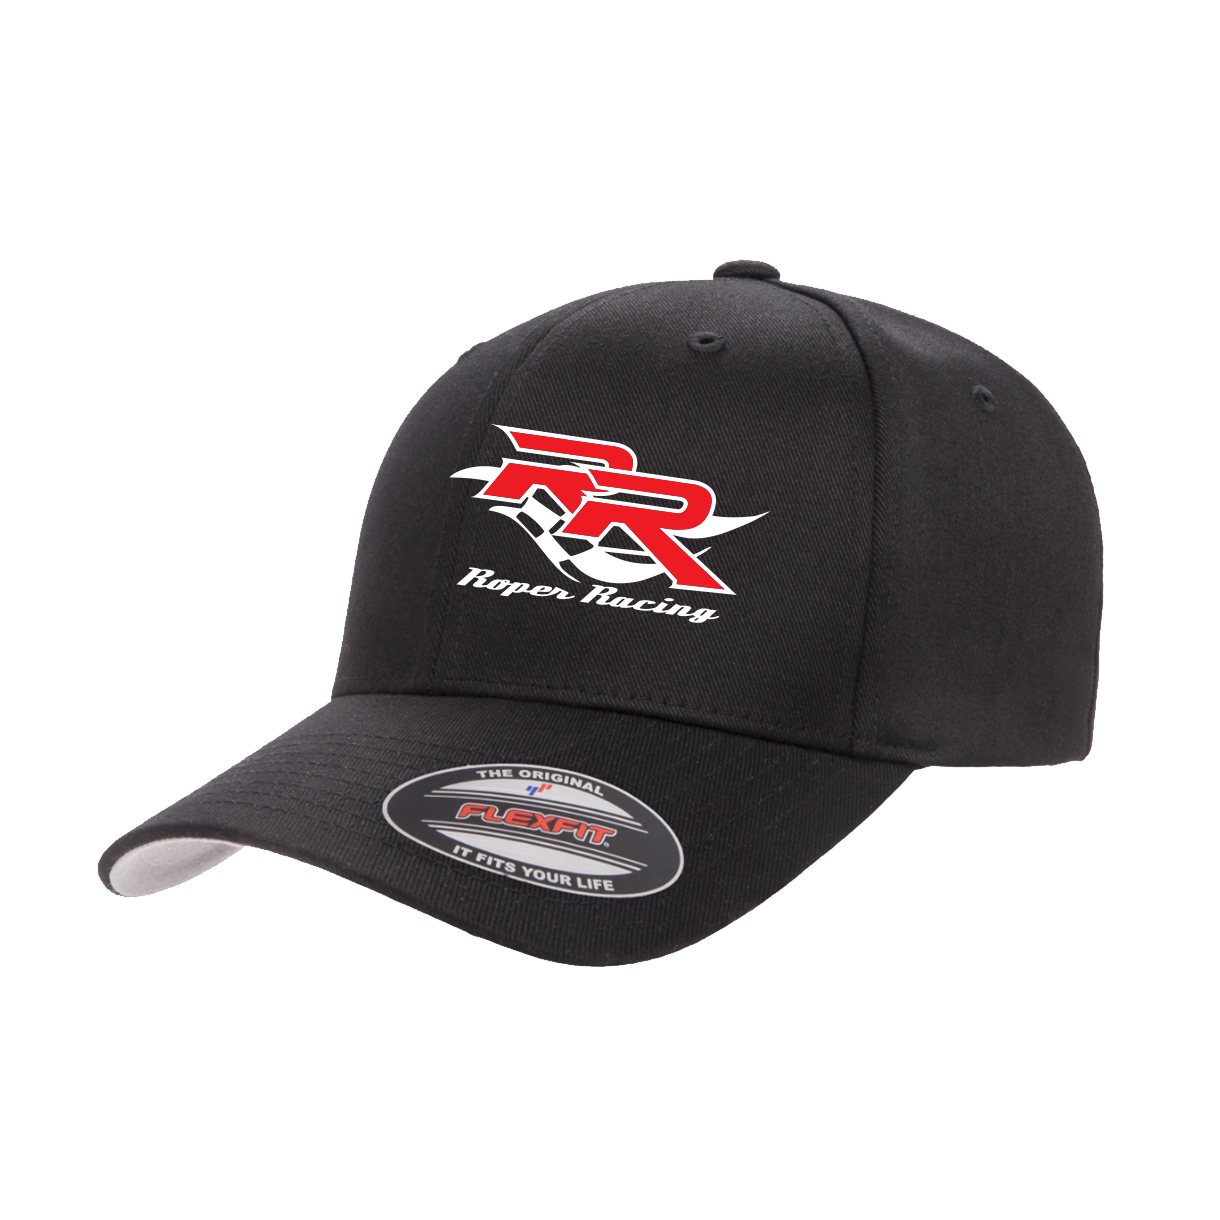 Roper Racing Logo Hat